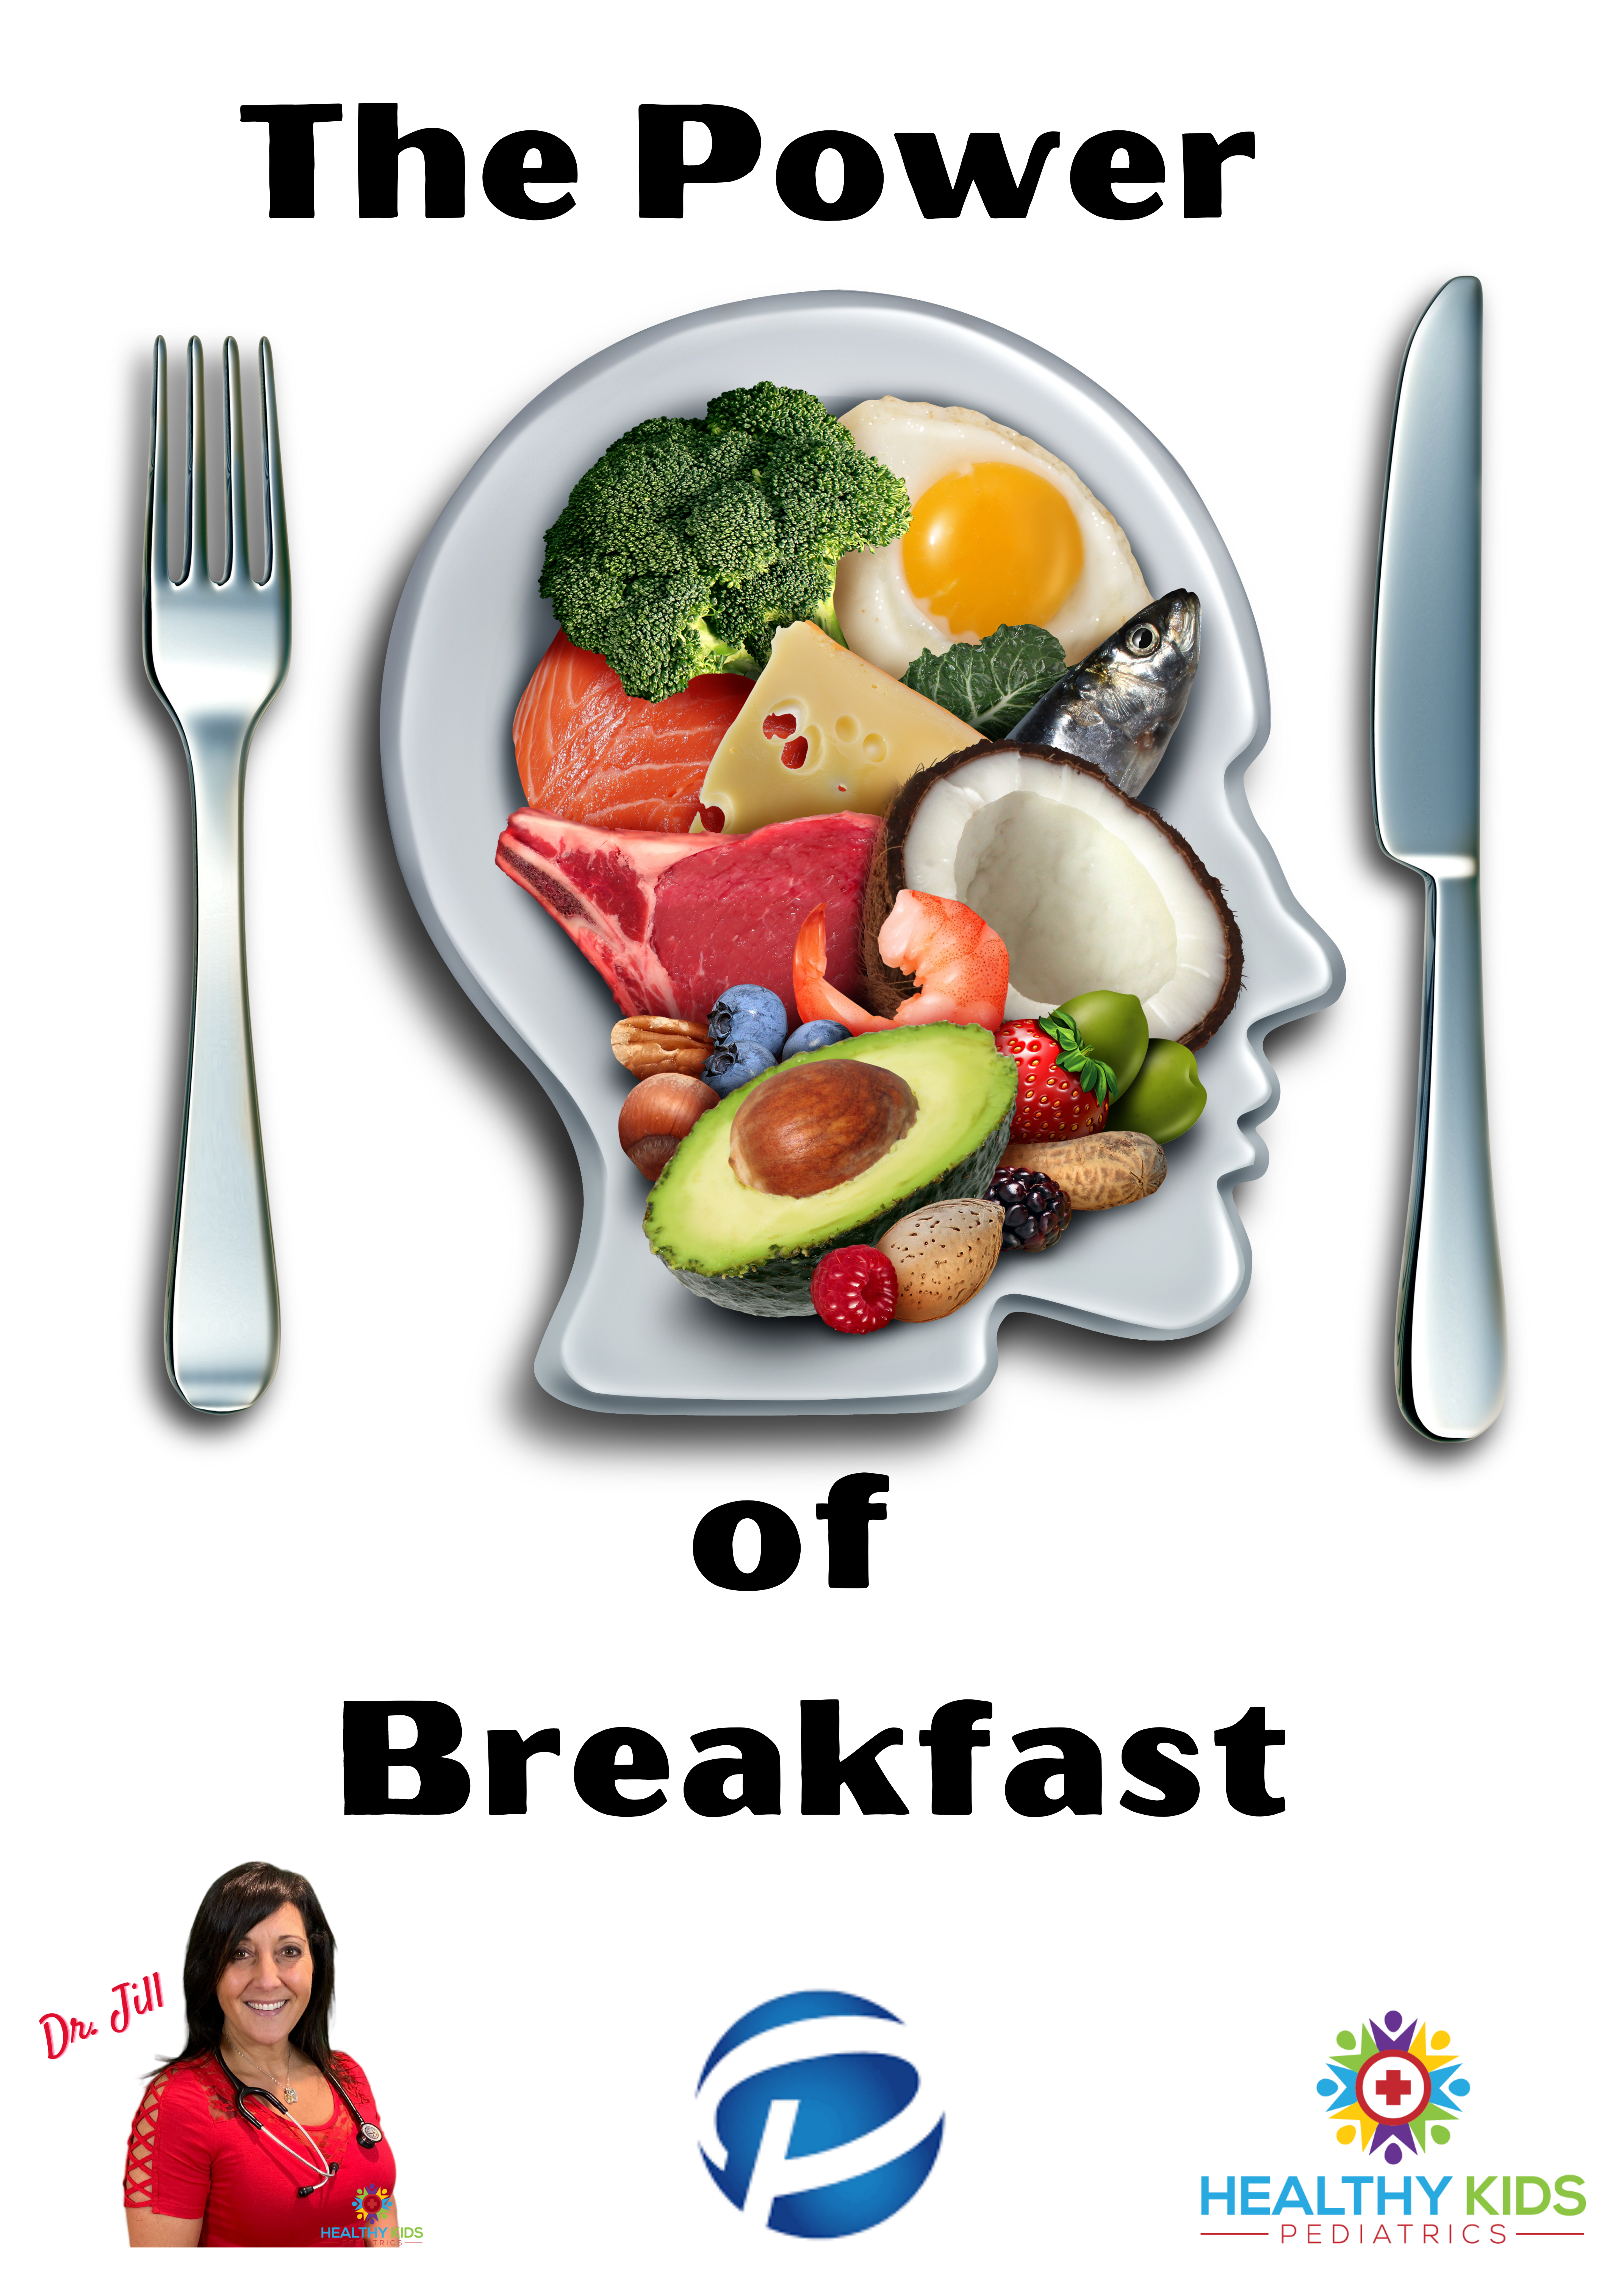 The Power of Breakfast – Pomptonian Food Service